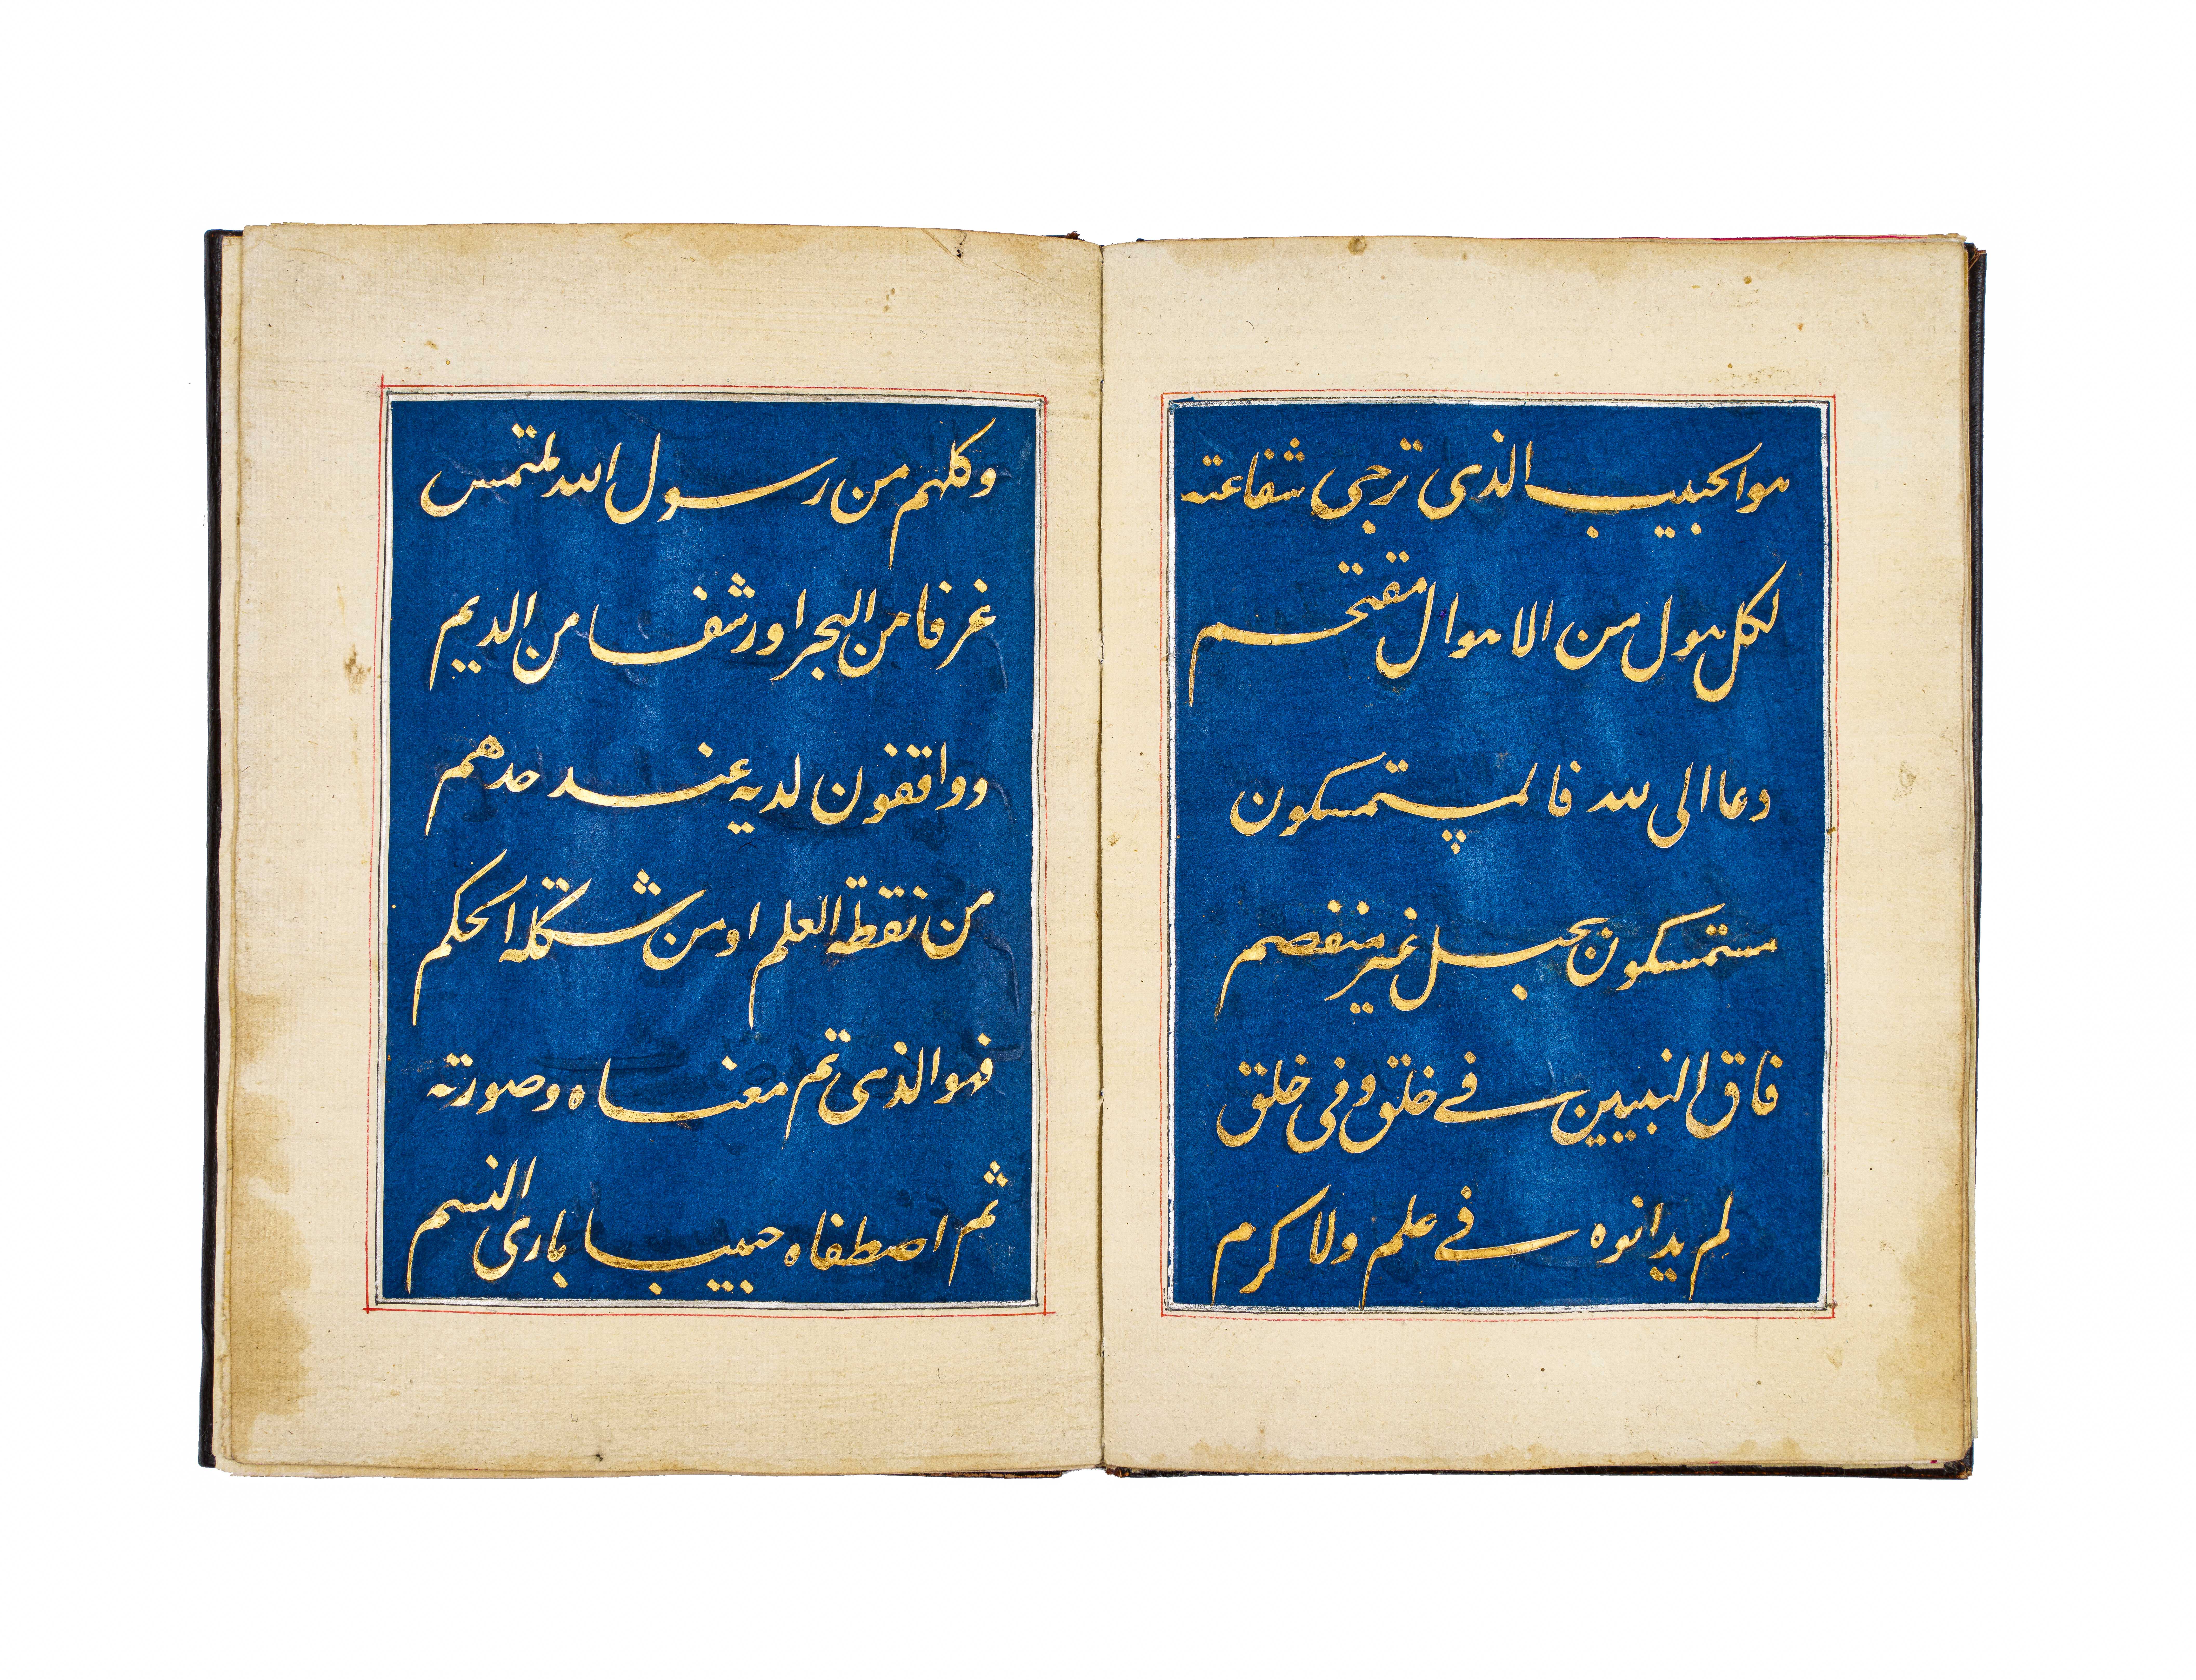 A POEM (AL-BURDAH) WRITTEN BY SHEIKH MUHAMMAD ABDUL AZIZ AL-RIFAI, DATED 1325AH, ON BLUE PAPER - Image 3 of 5